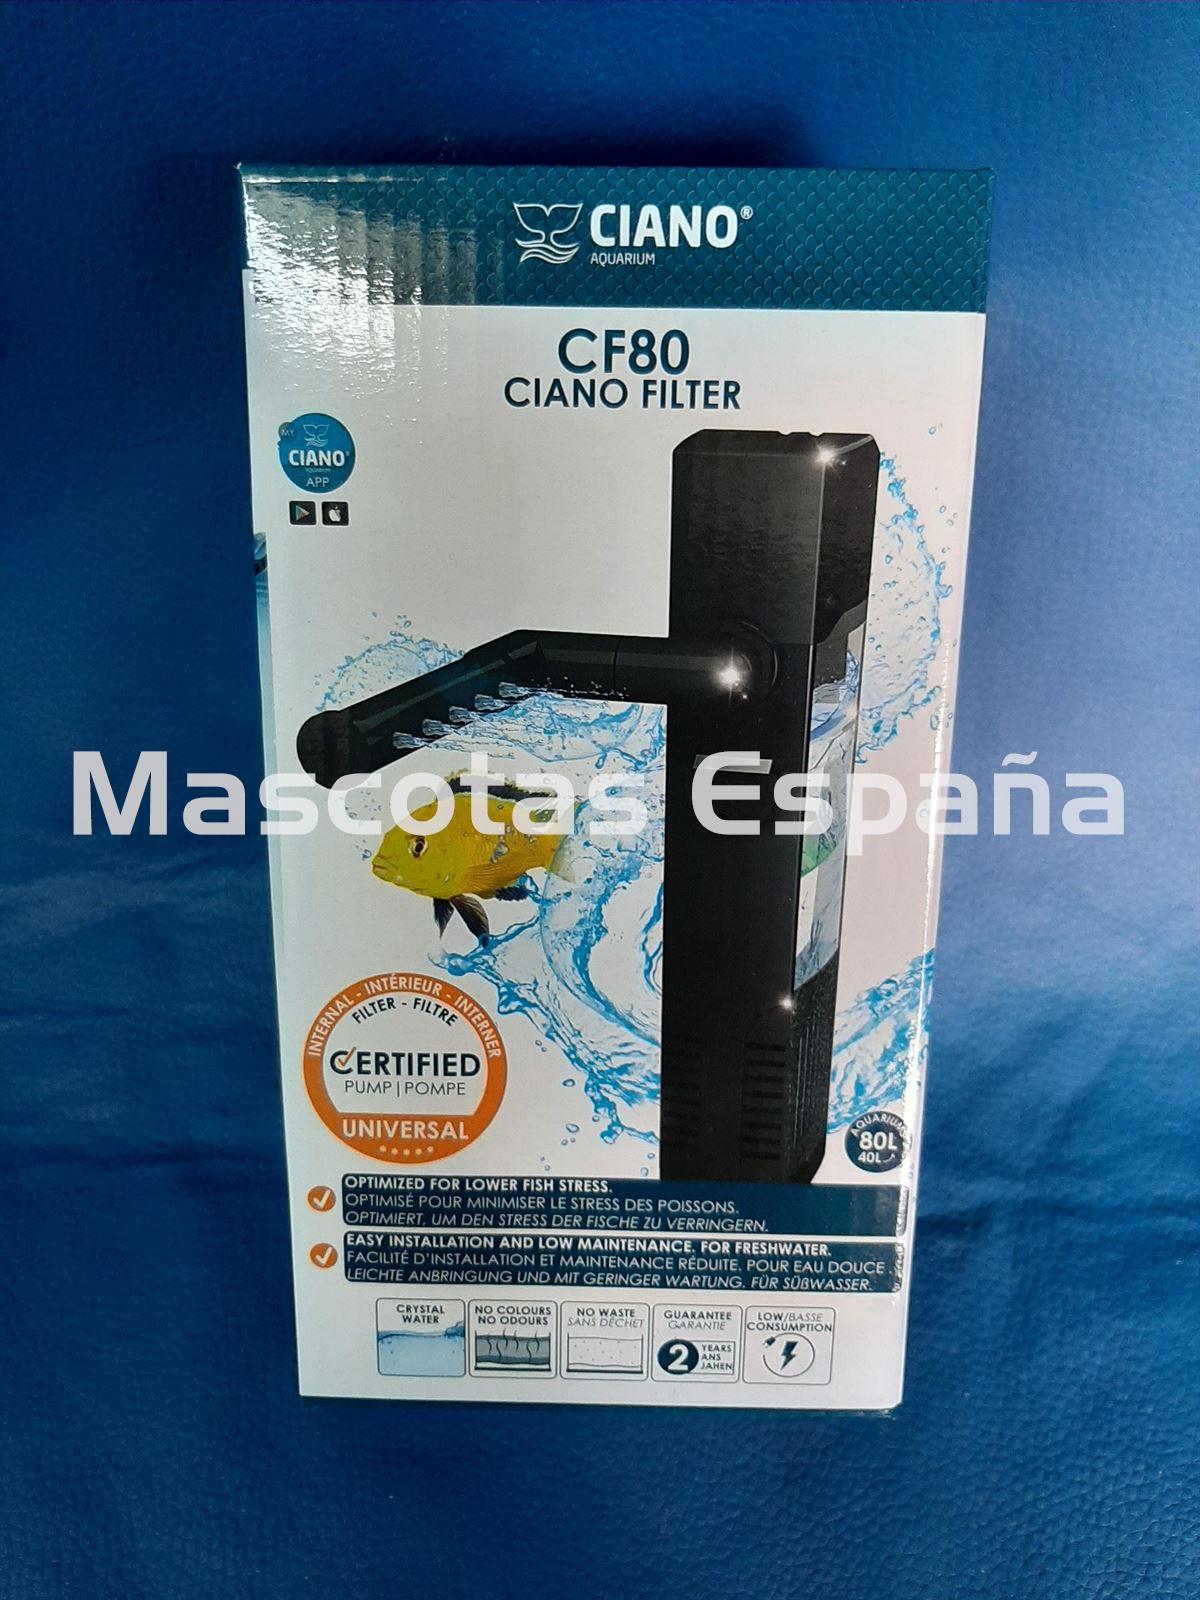 CIANO Filtro Acuario CF80 - Imagen 1